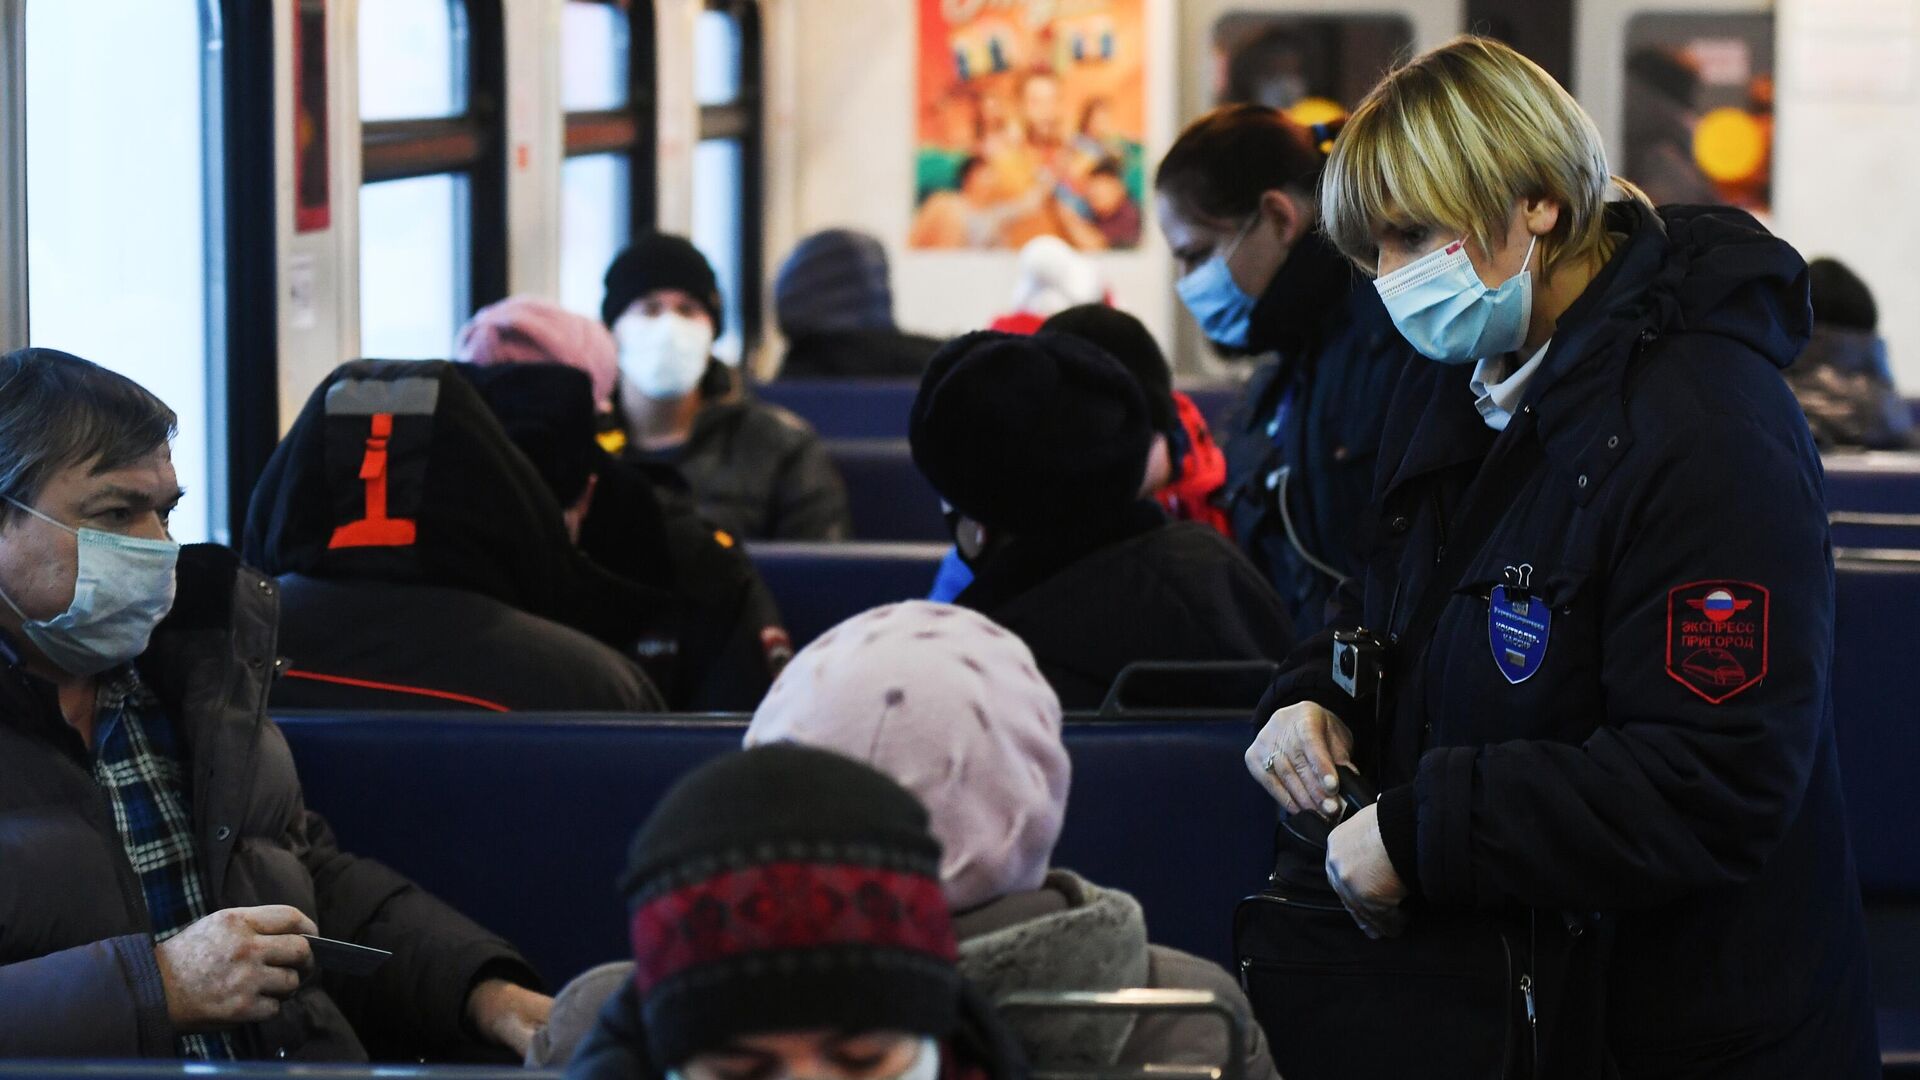 Контролеры в защитных масках проверяют наличие билетов у пассажиров в электропоезде в Новосибирске - РИА Новости, 1920, 04.02.2021